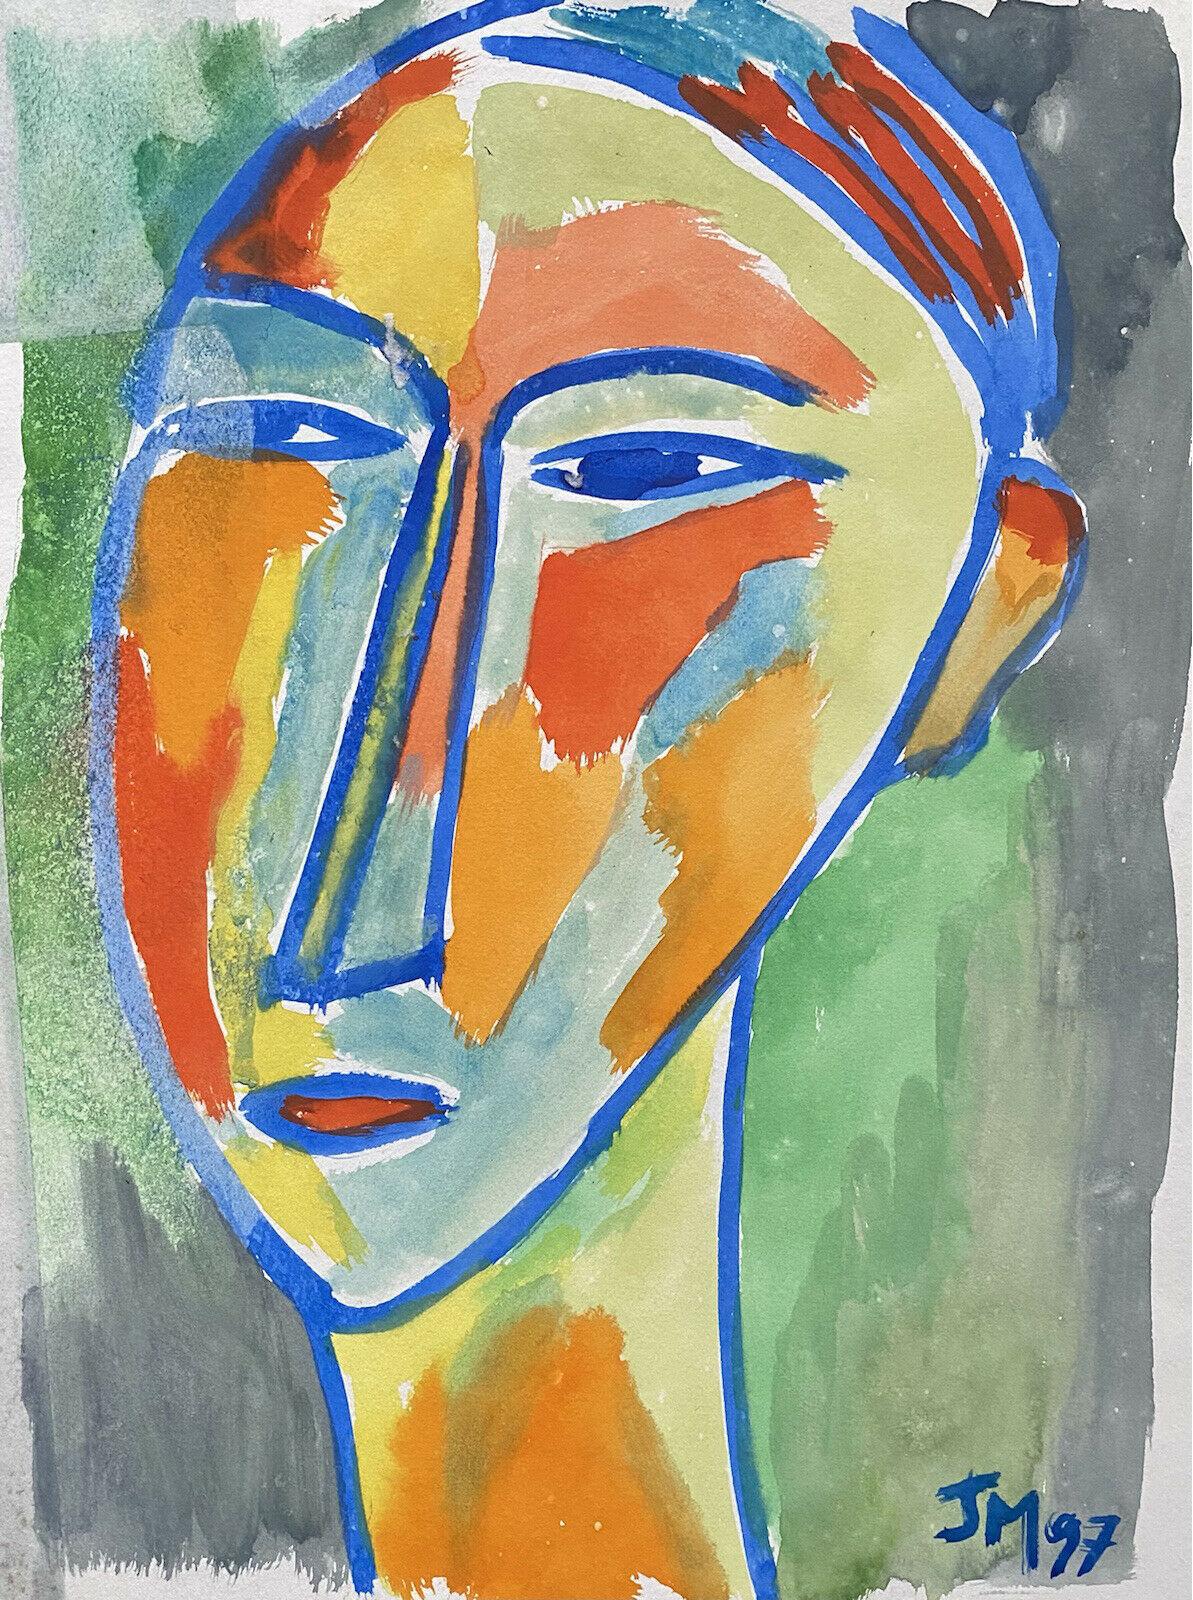 Jean Marc Portrait Painting – JEAN MARC (1949-2019) 20. Jahrhundert FRENCH MODERNIST PAINTING – PORTRAIT OF FACE